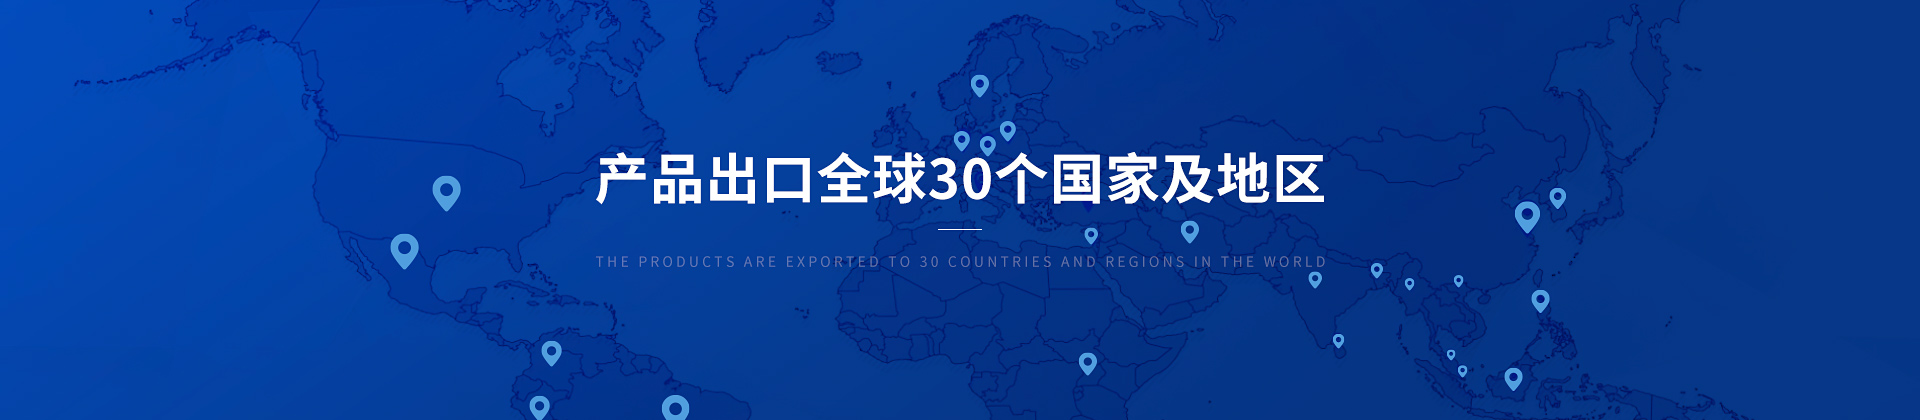 沐鸣平台登陆产品出口30个国家及地区